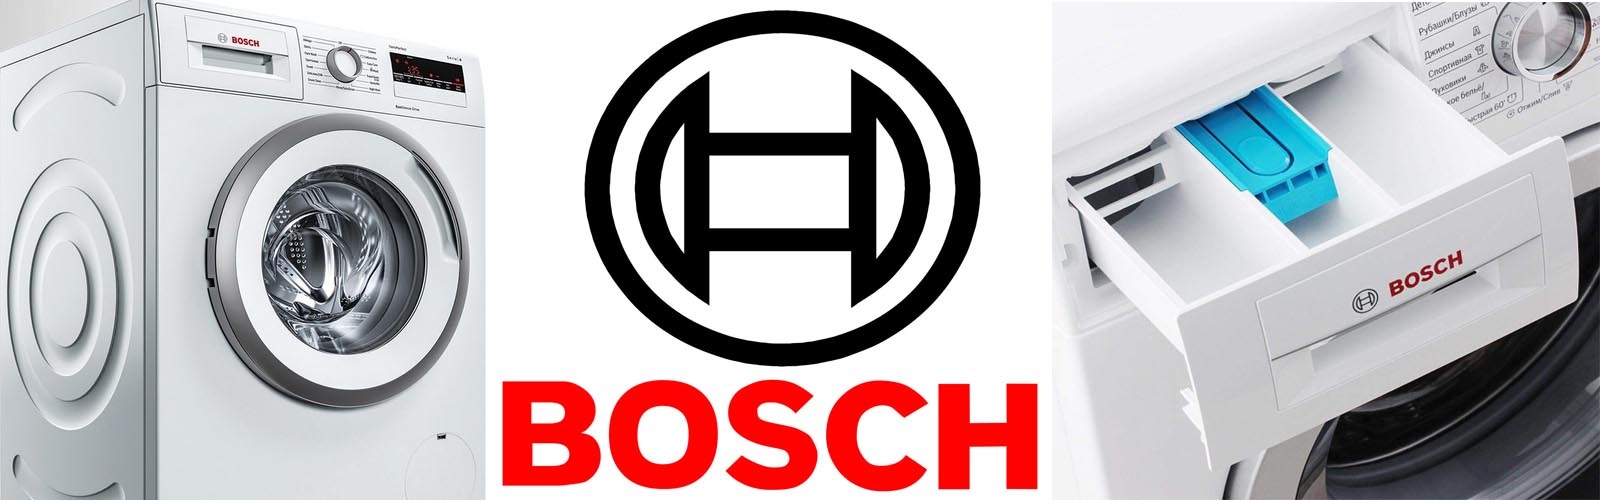 Warum Bosch so beliebt ist